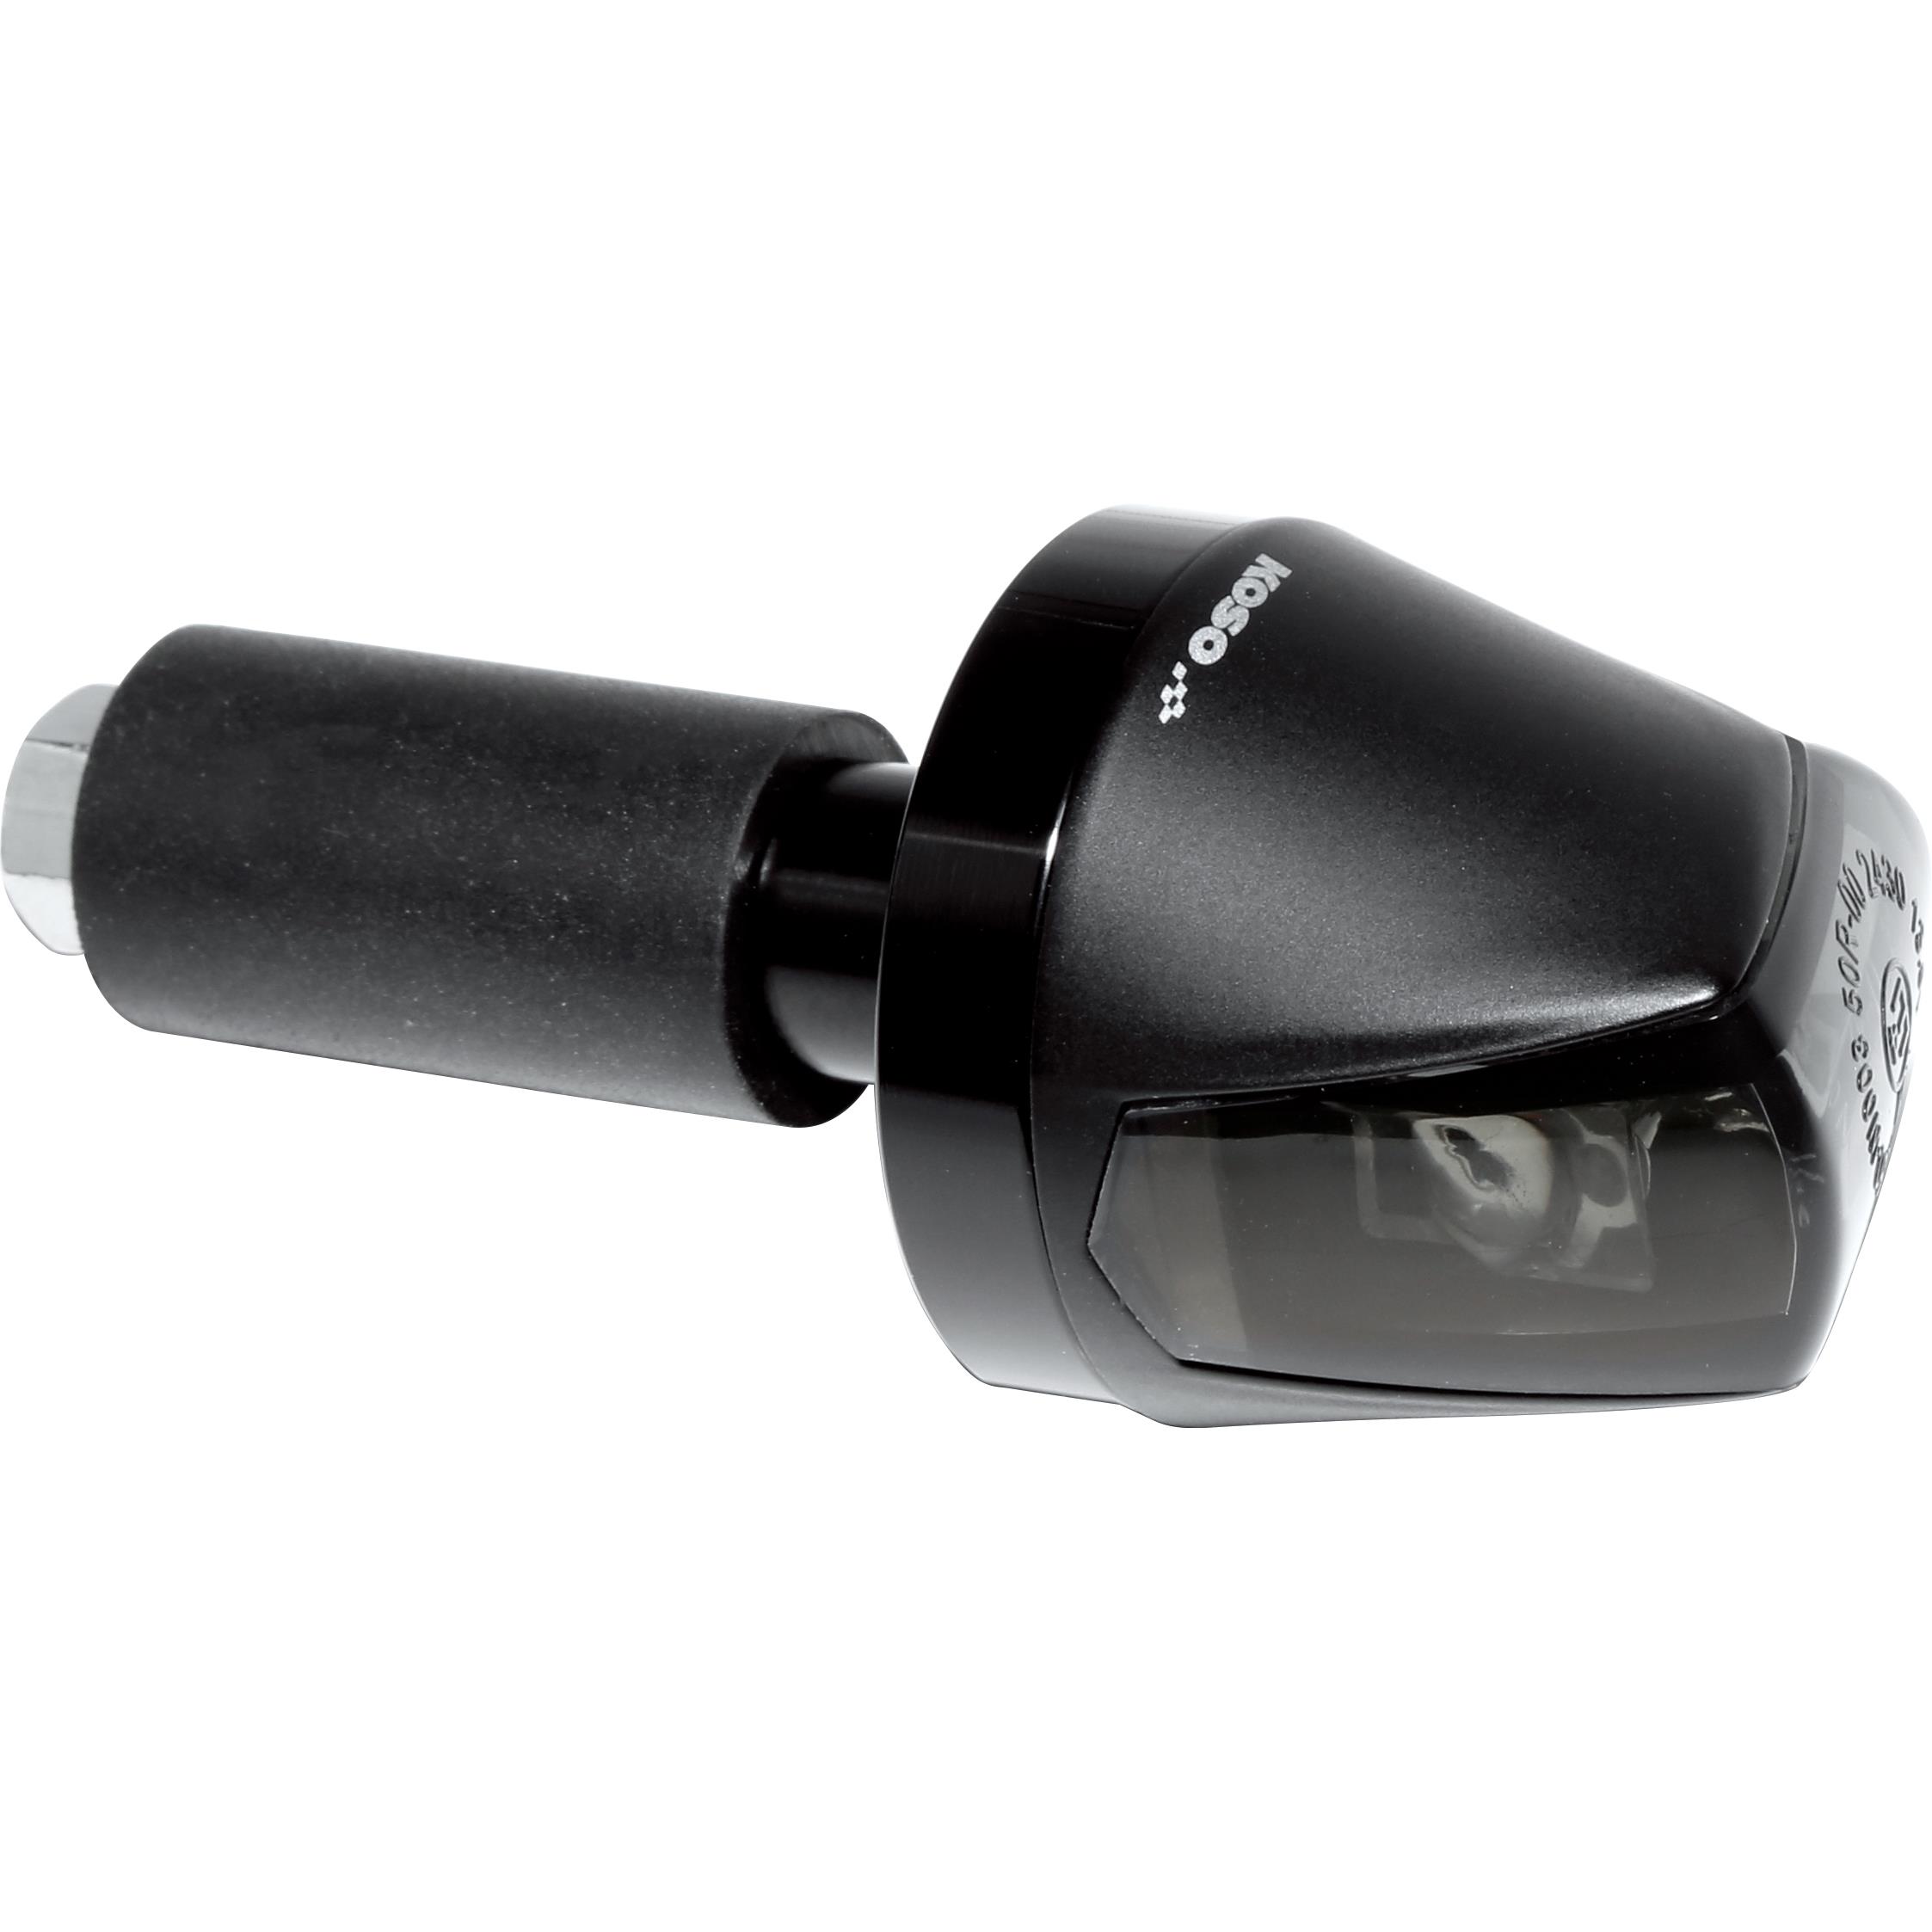 Universal Motorrad Lenkerenden - Hi-Power-LED Blinker Knight schwarz getönt  E-geprüft 2. Wahl